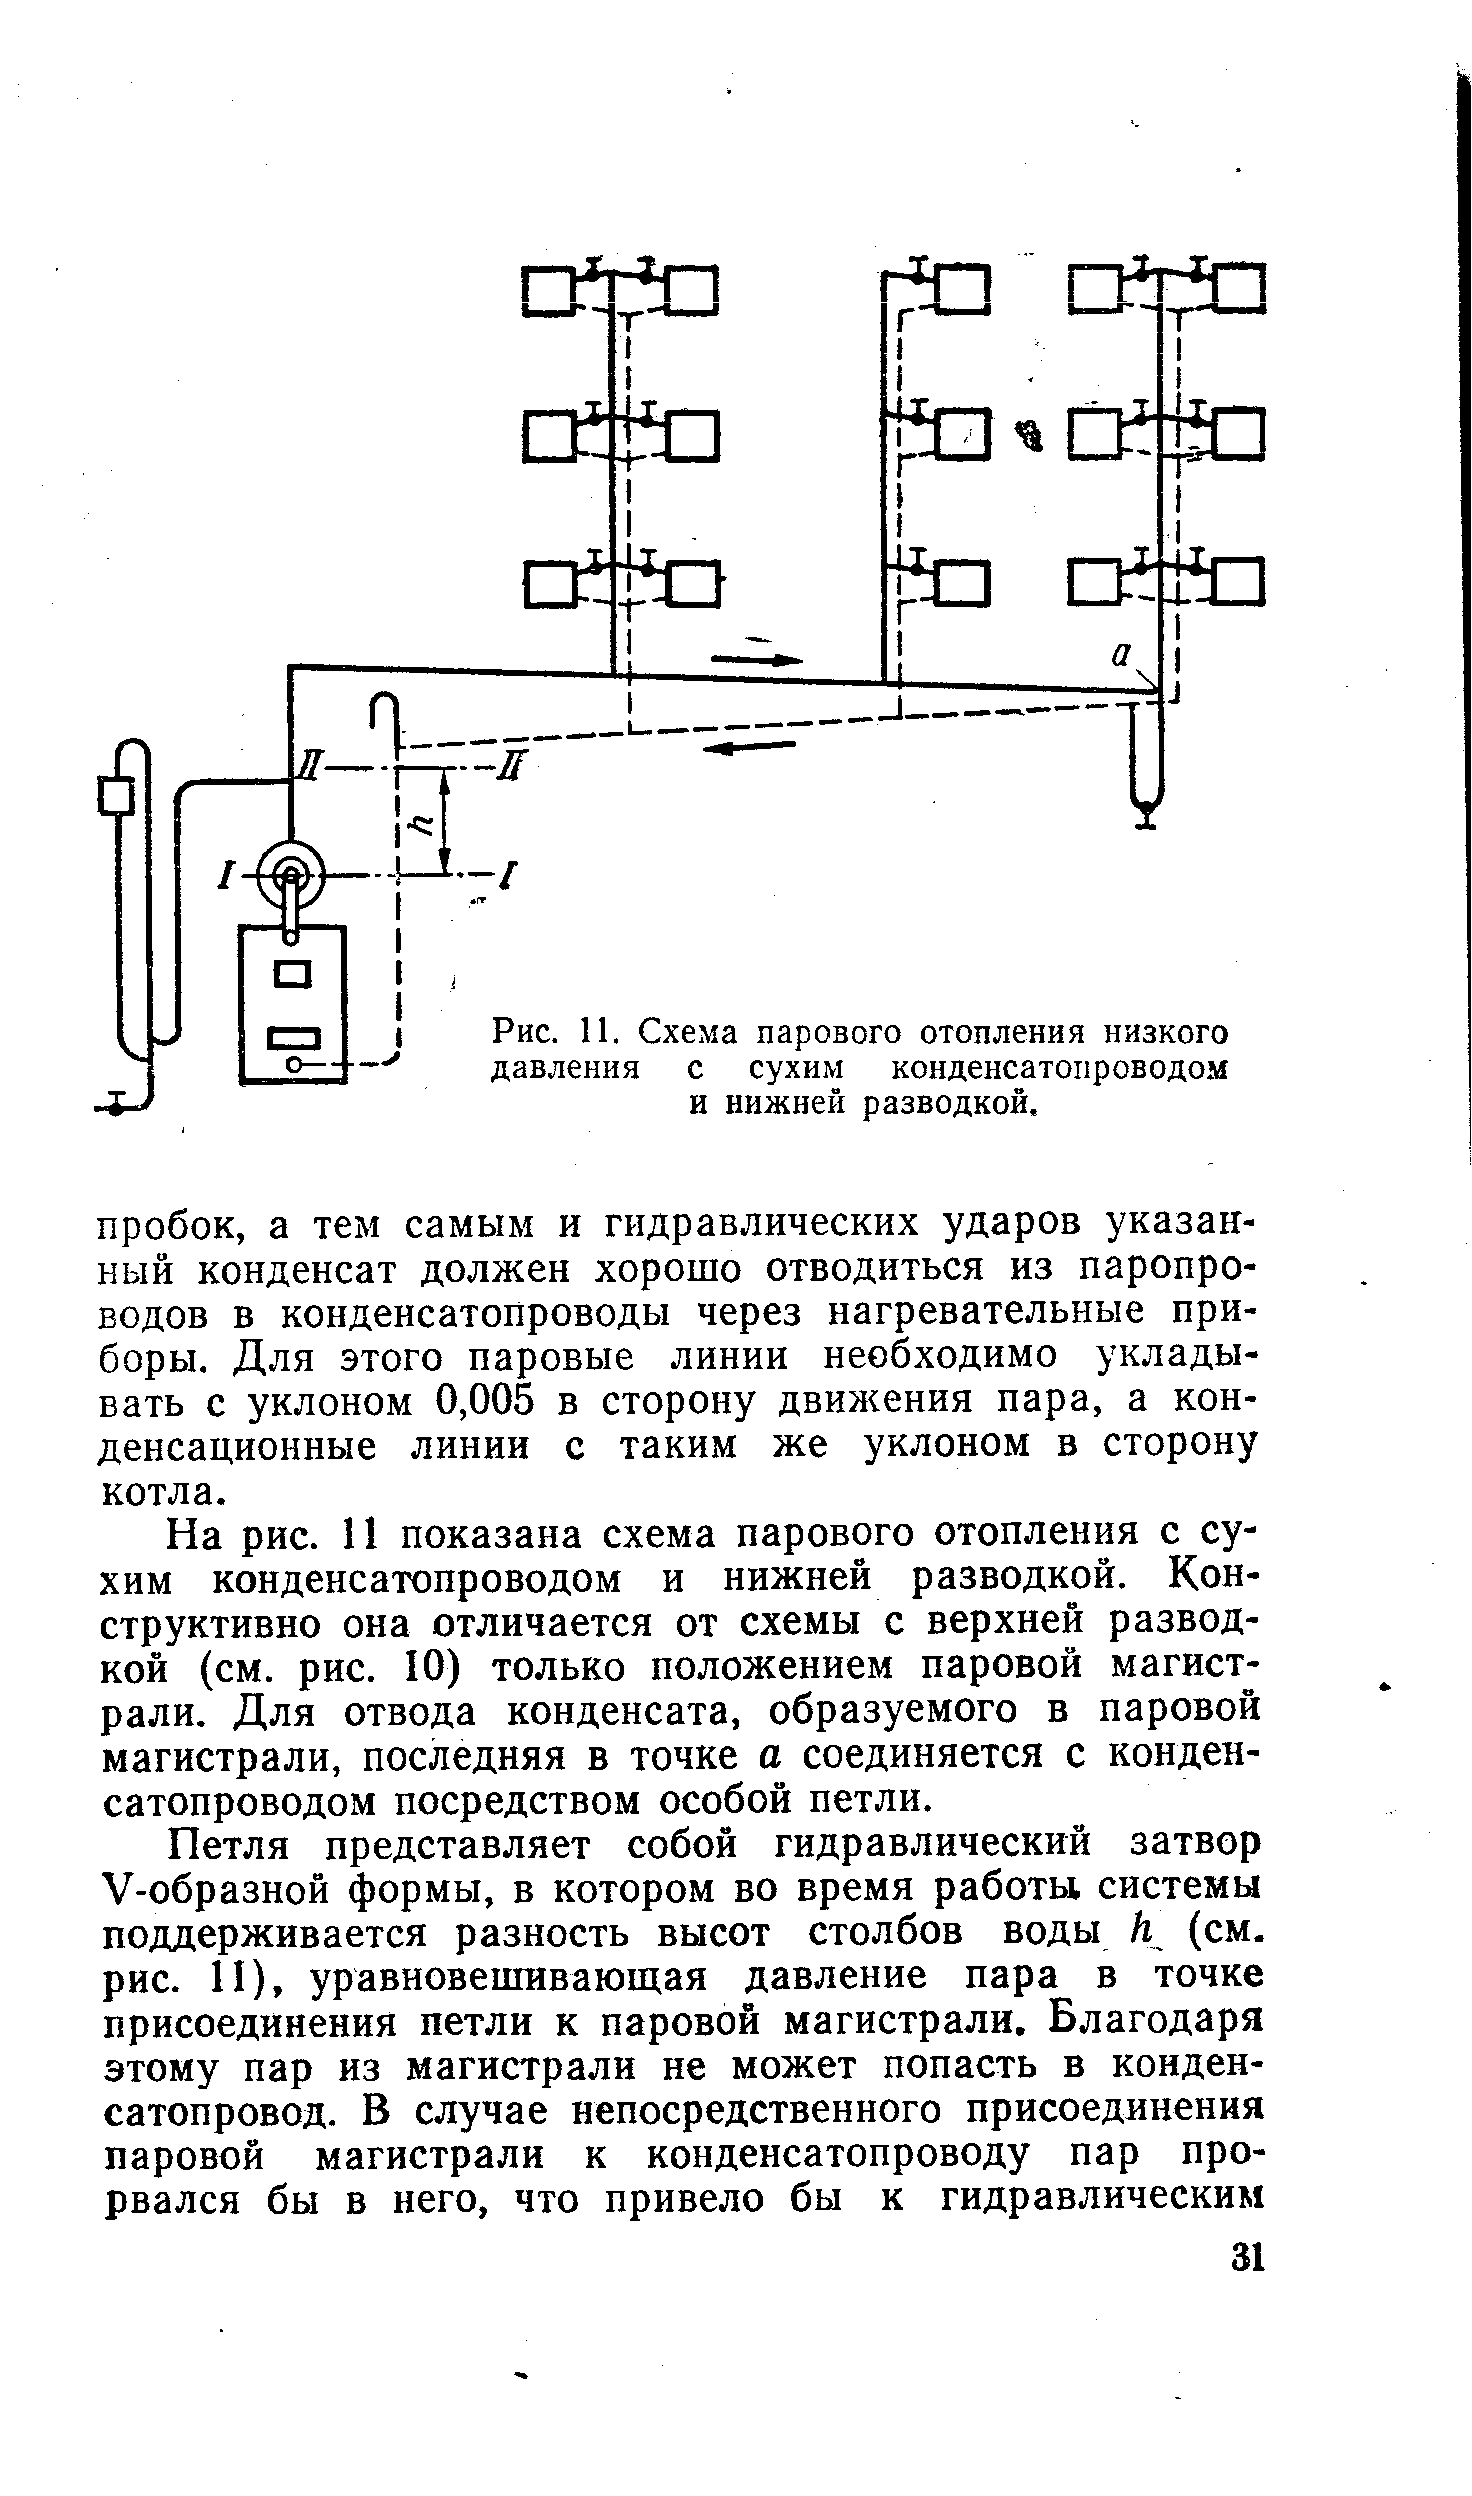 Рис. 11. Схема парового отопления низкого давления с сухим конденсатопроводом и нижней разводкой.
